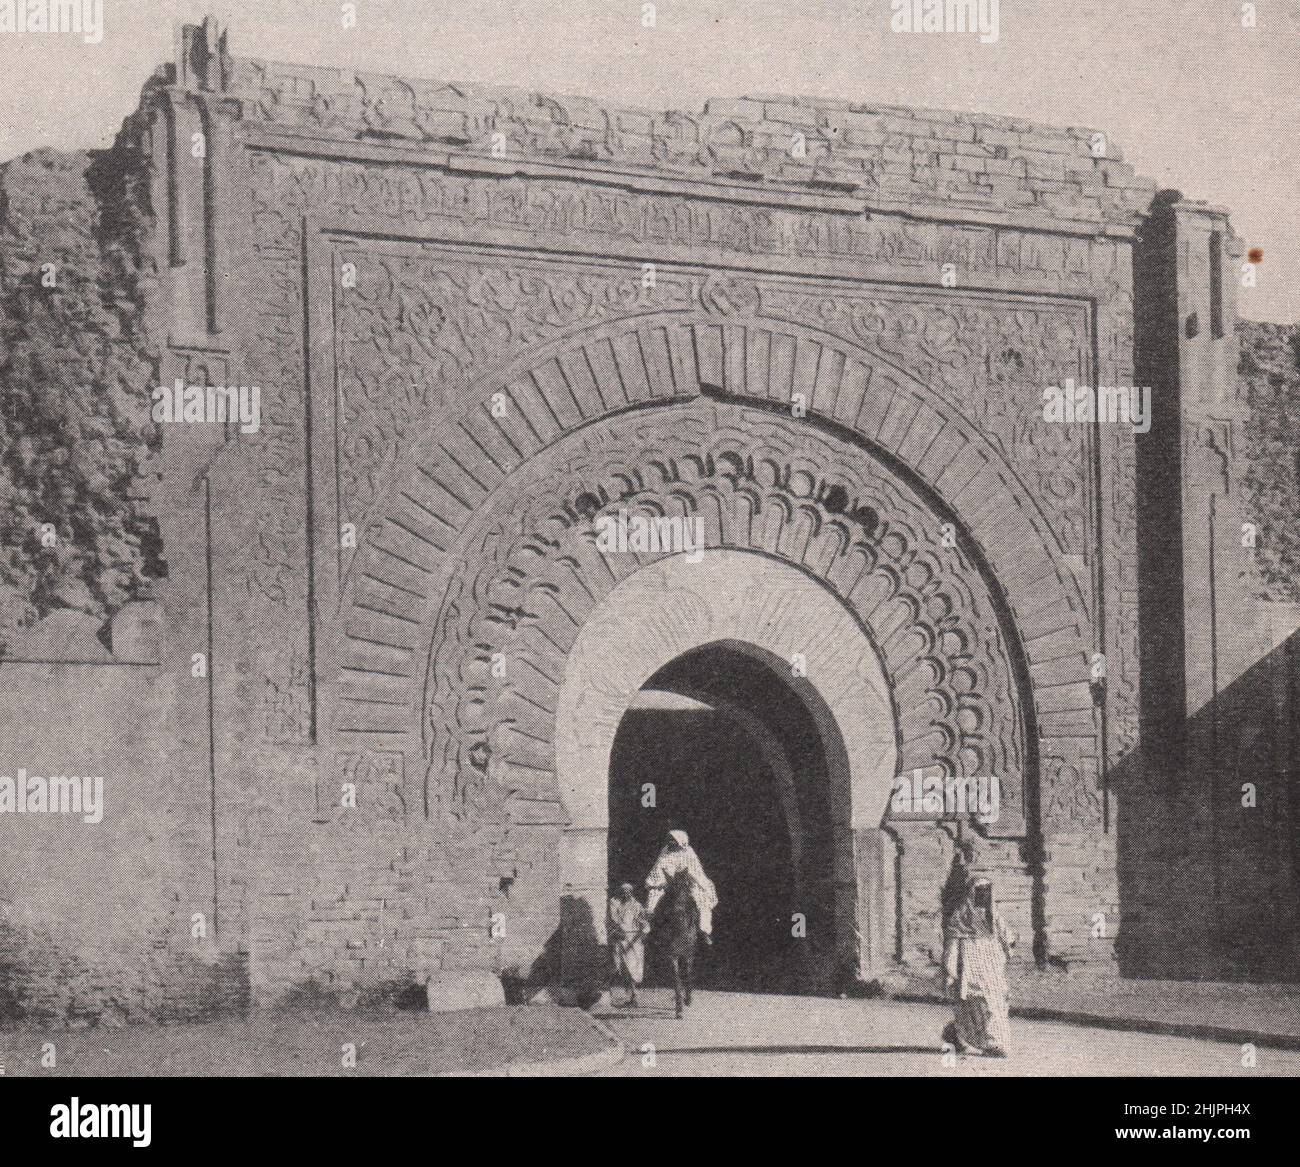 Eines der wettergetragenen Portale in den Mauern von Marrakesch. Marokko. Barbary States (1923) Stockfoto